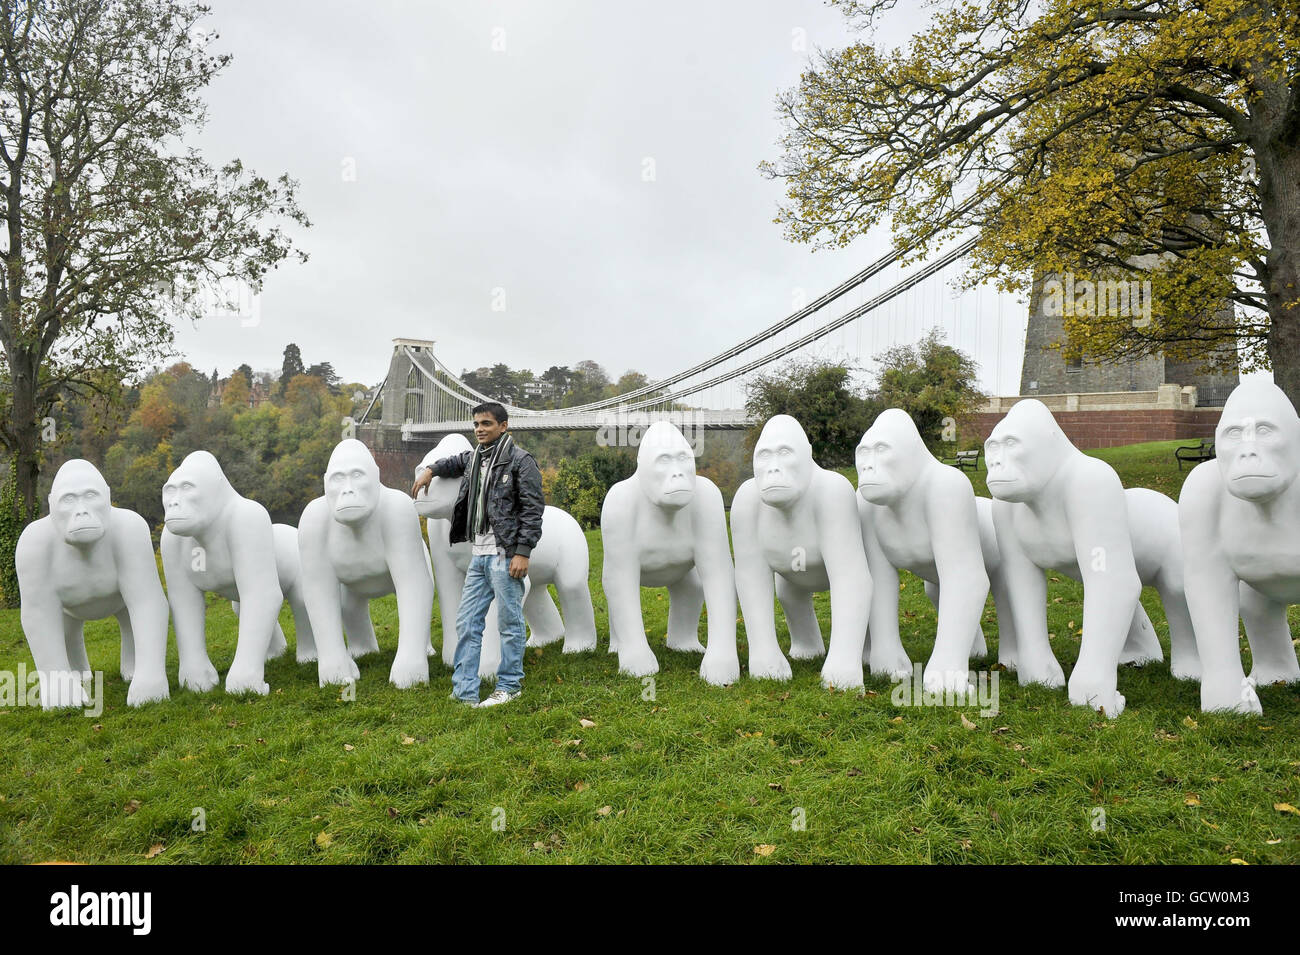 Un touriste chinois pose pour des photos à côté d'une série de sculptures  de gorille grandeur nature à côté du pont suspendu de Clifton dans le cadre  d'un grand événement d'art public